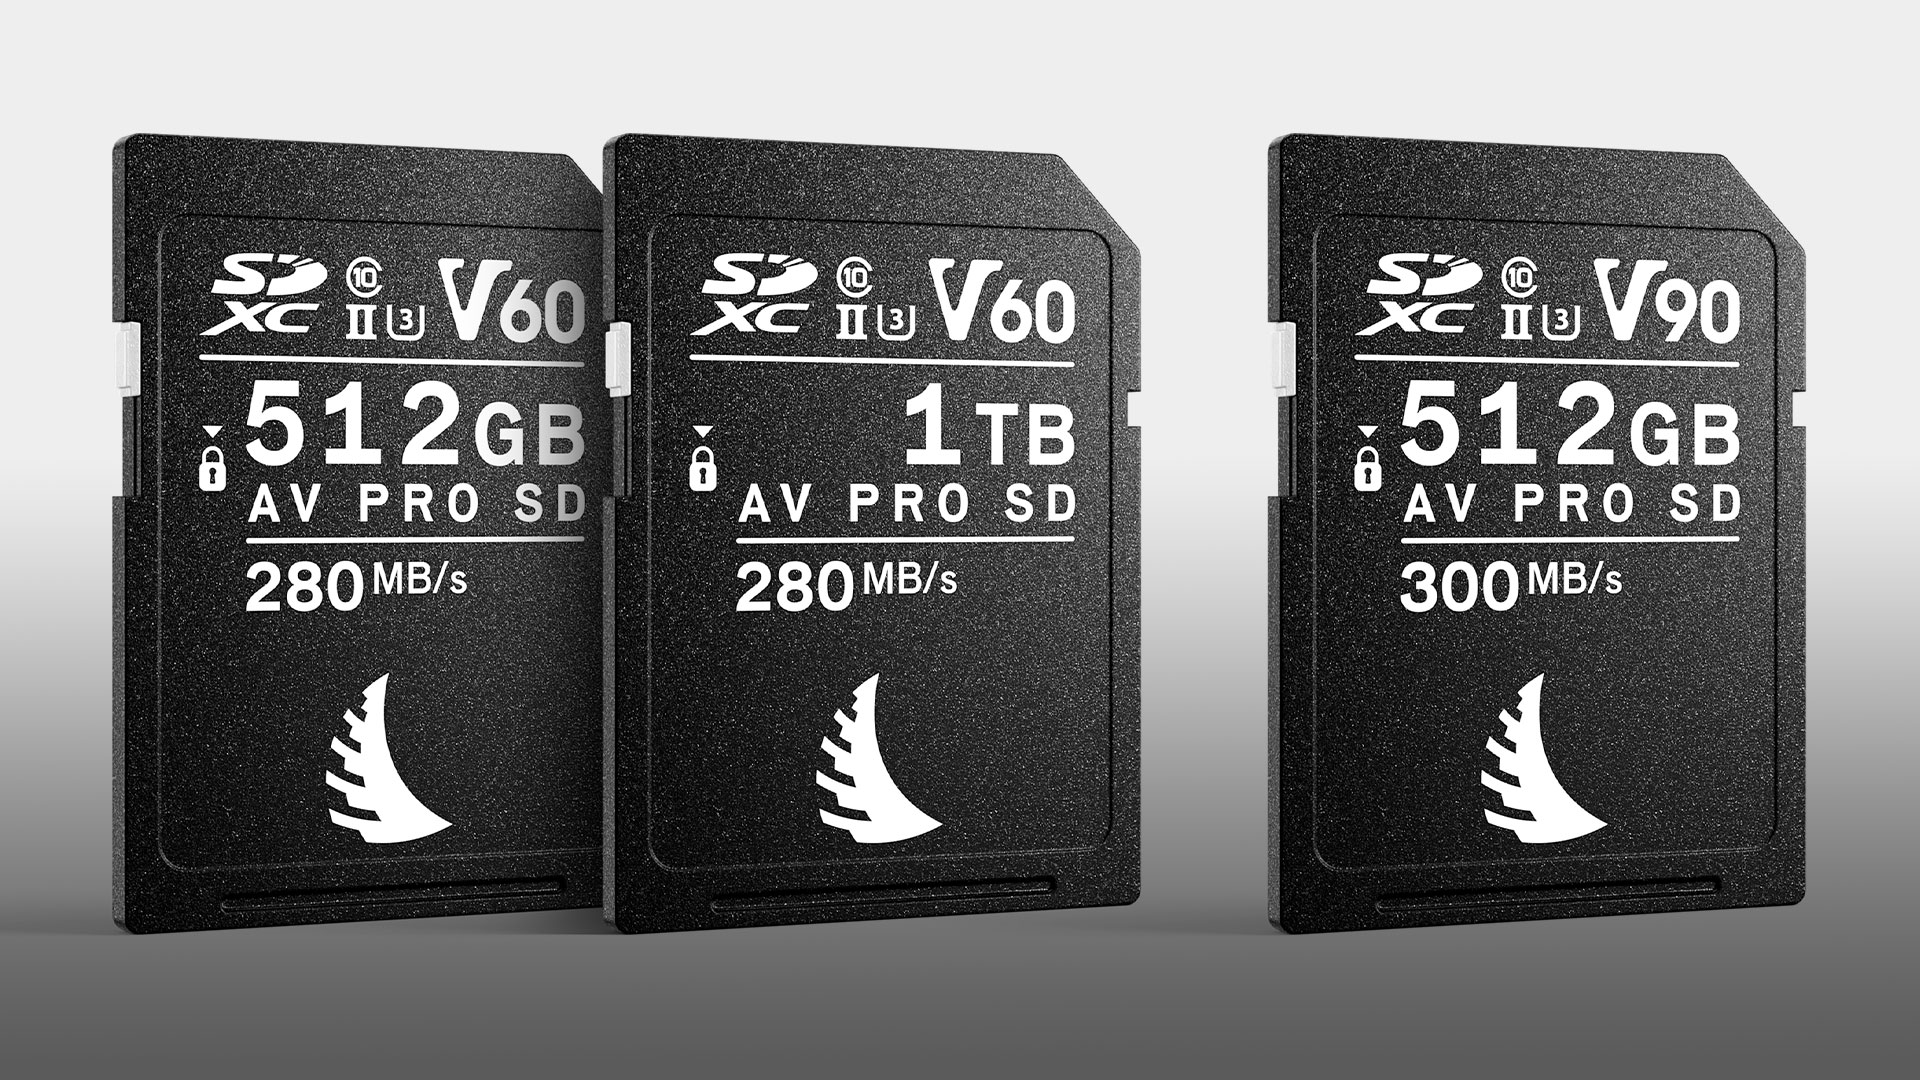 Angelbird 512GB AV Pro Mk 2 V90 SD Memory Card